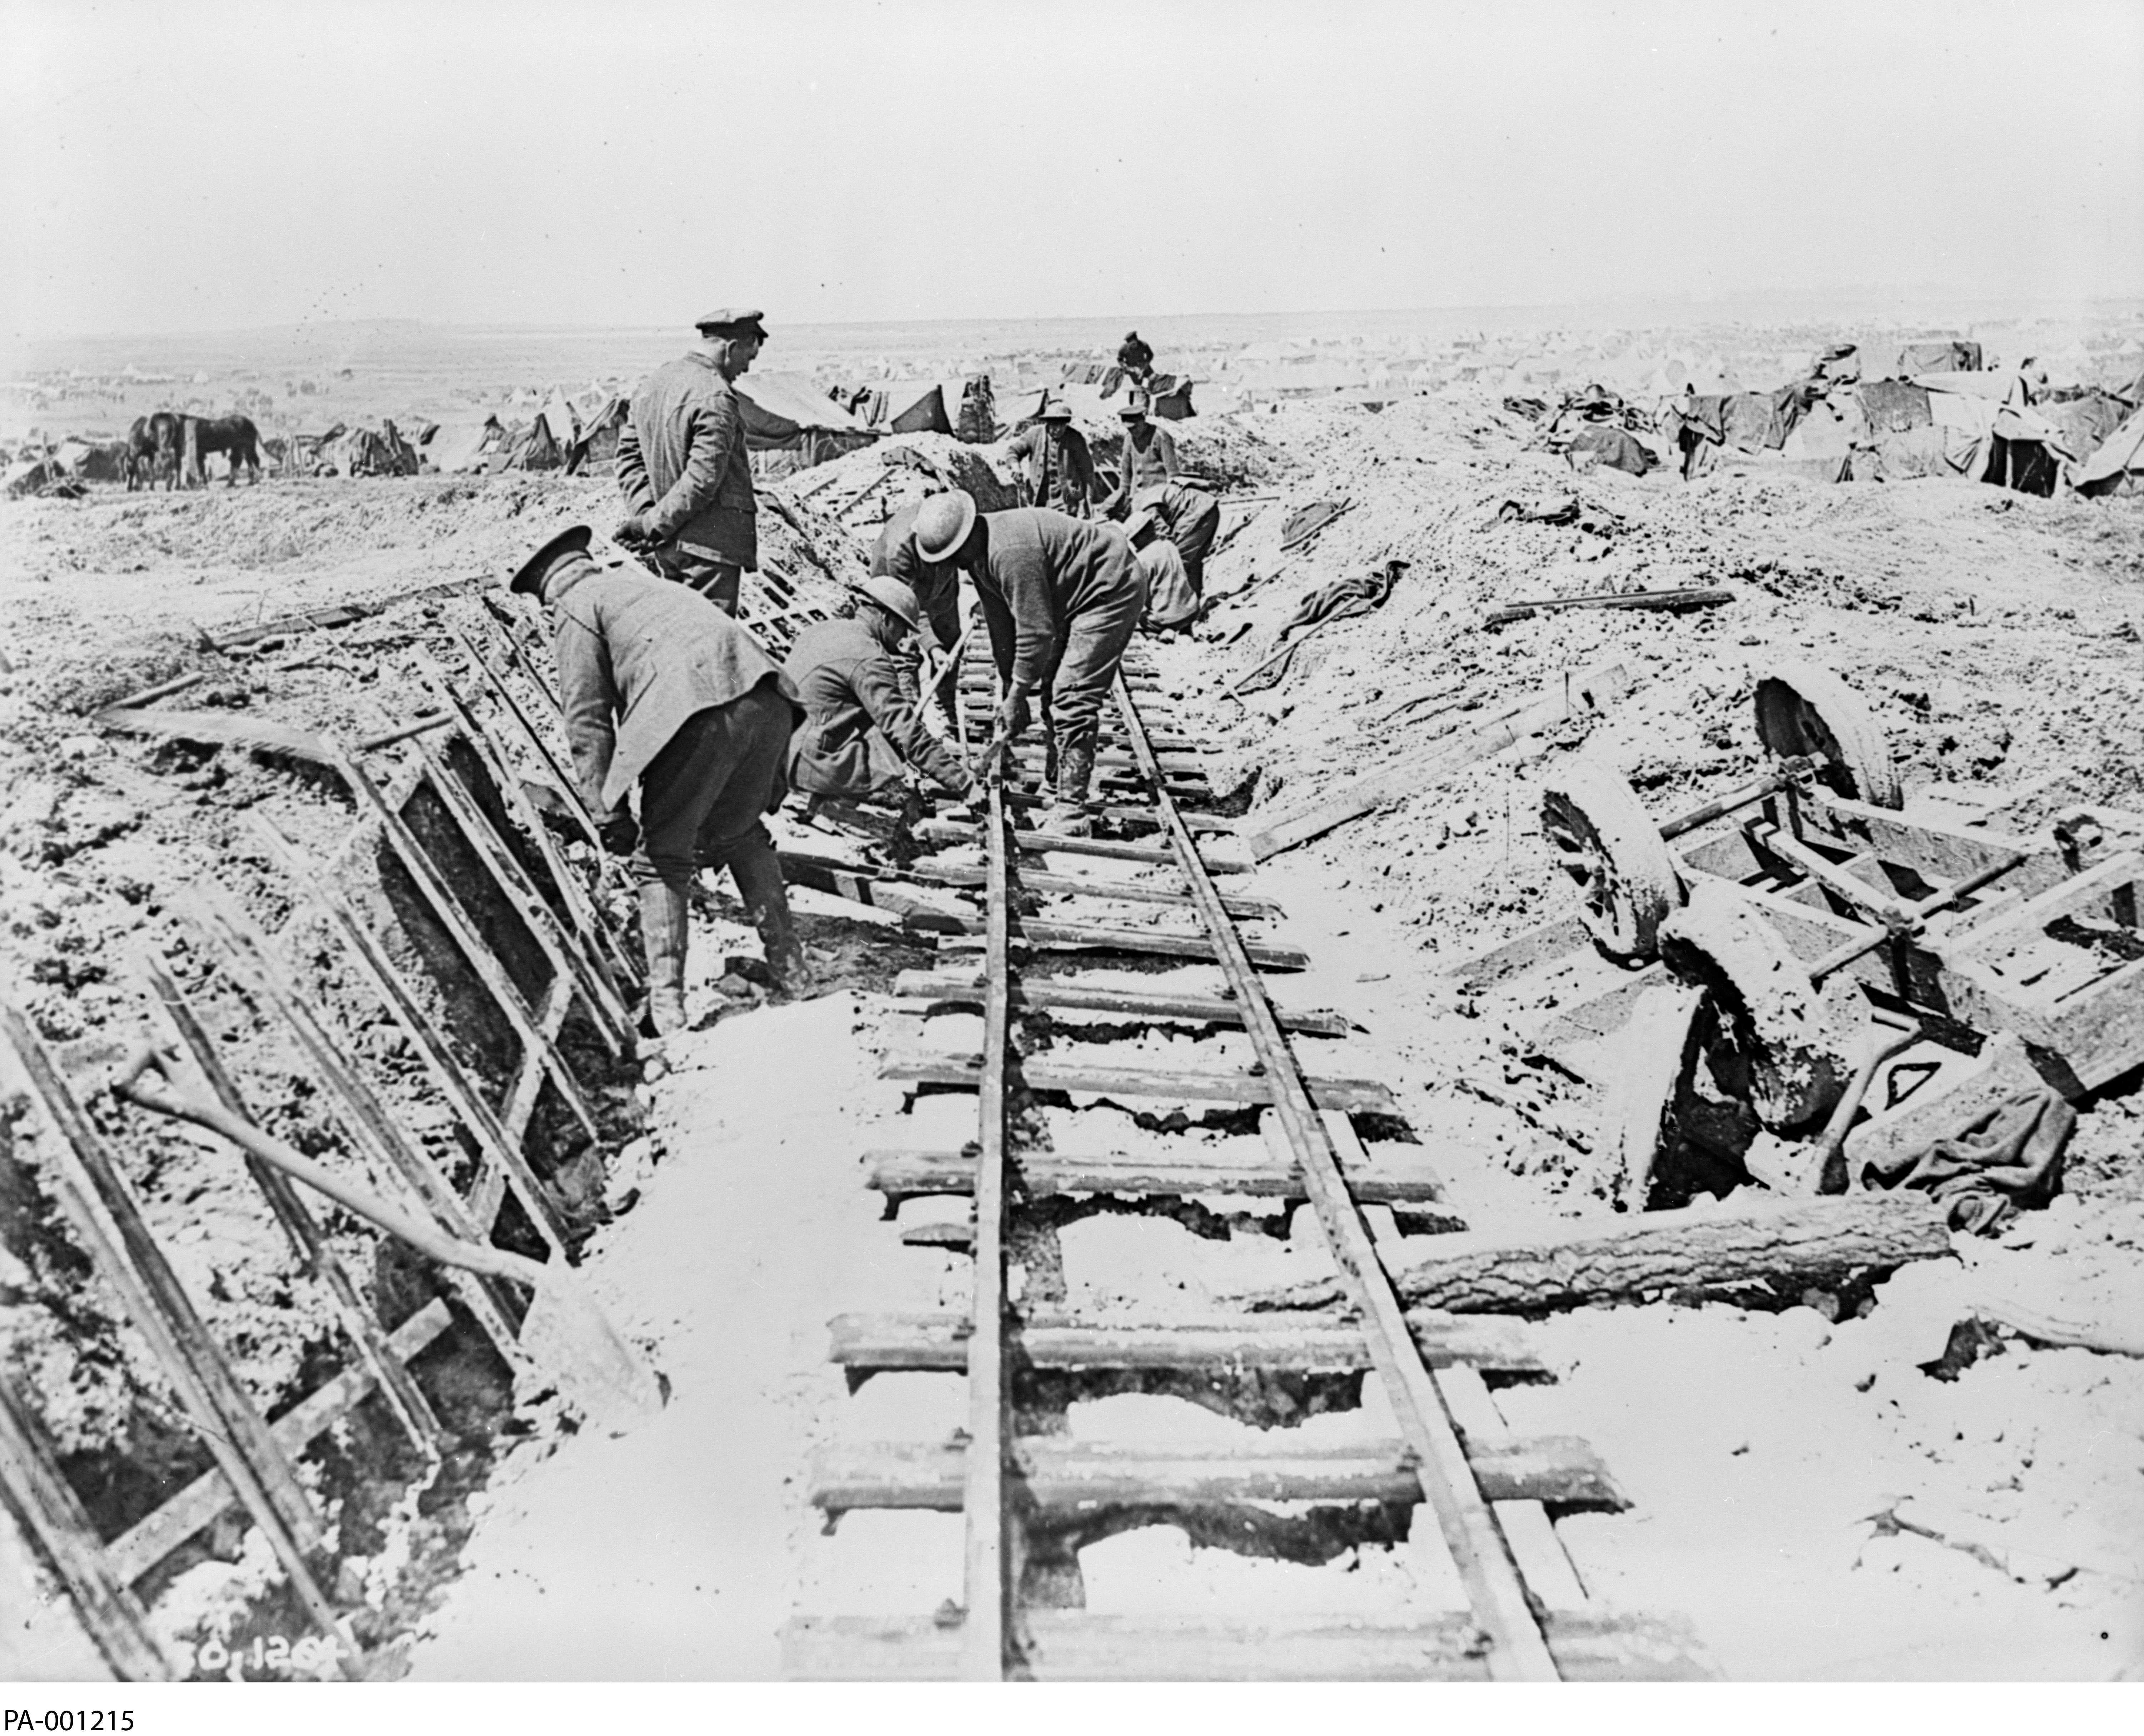 Photographie en noir et blanc - À l'avant-plan, sur un sol boueux, quatre hommes posent des rails pré-assemblés. Un cinquième homme, en tenue civile, les observe.